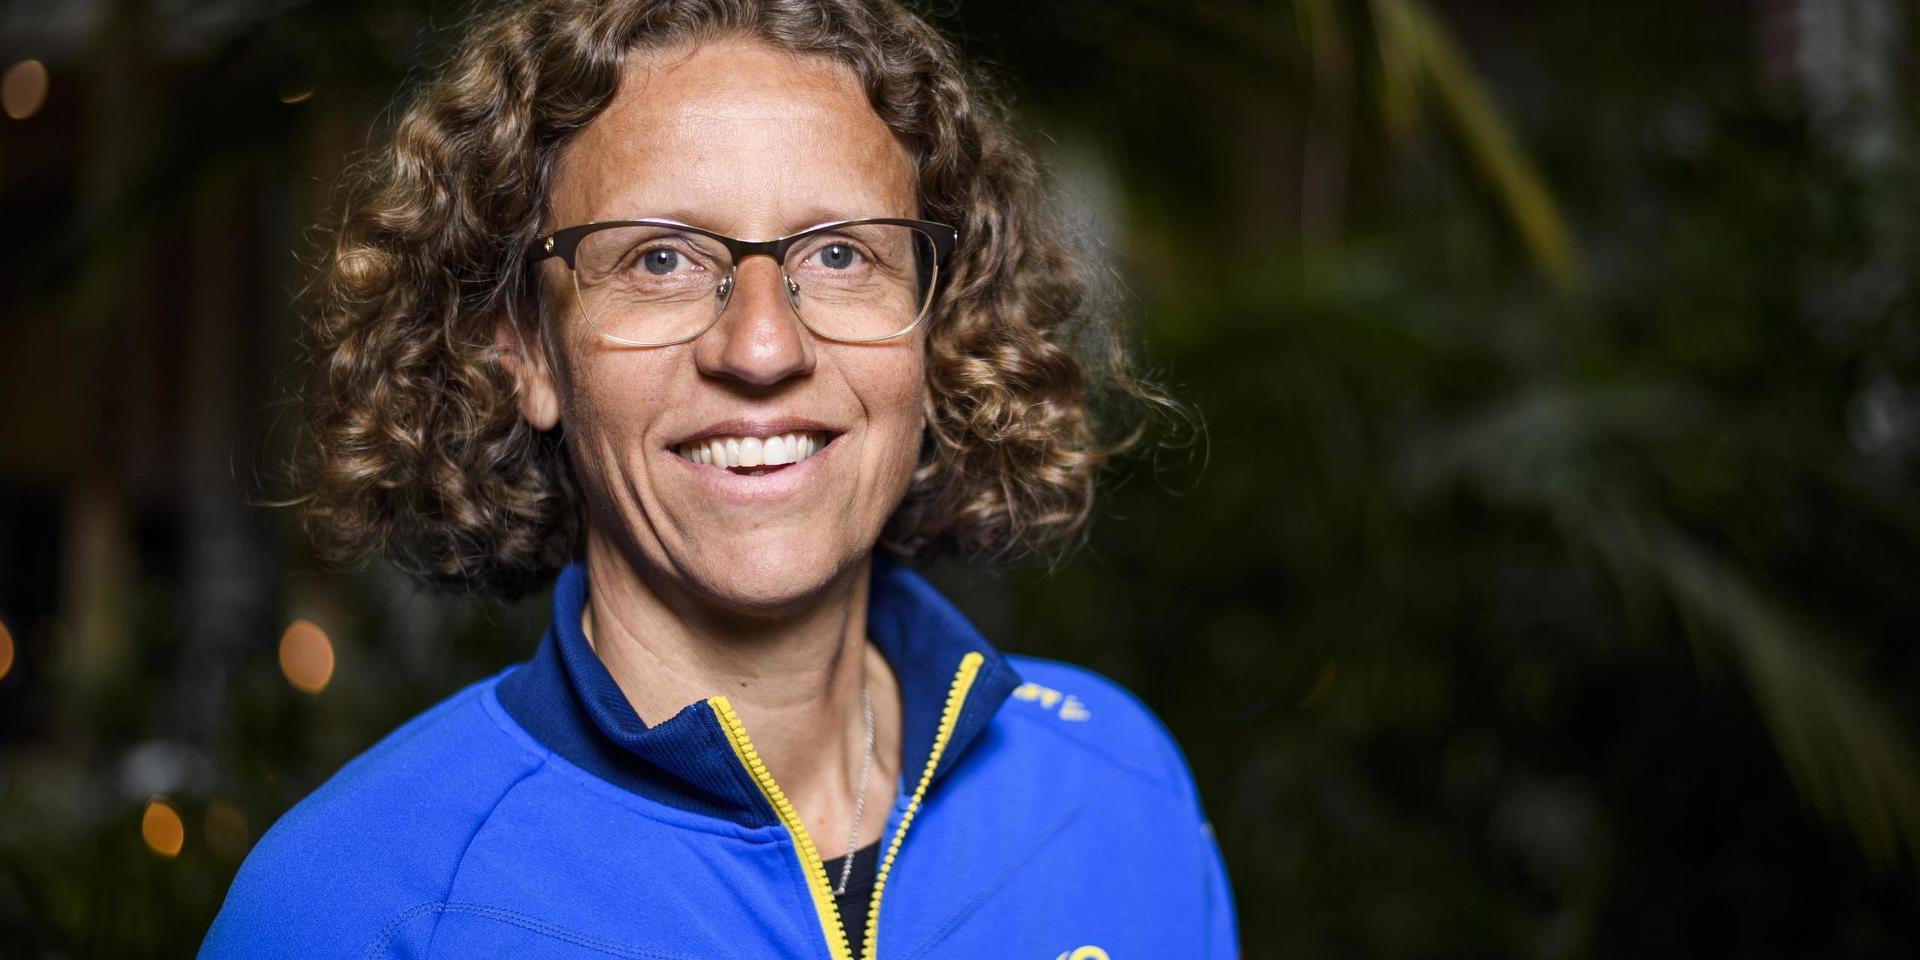 Förbundskapten Karin Torneklint är minst sagt imponerad av Khaddi Sagnias prestation.